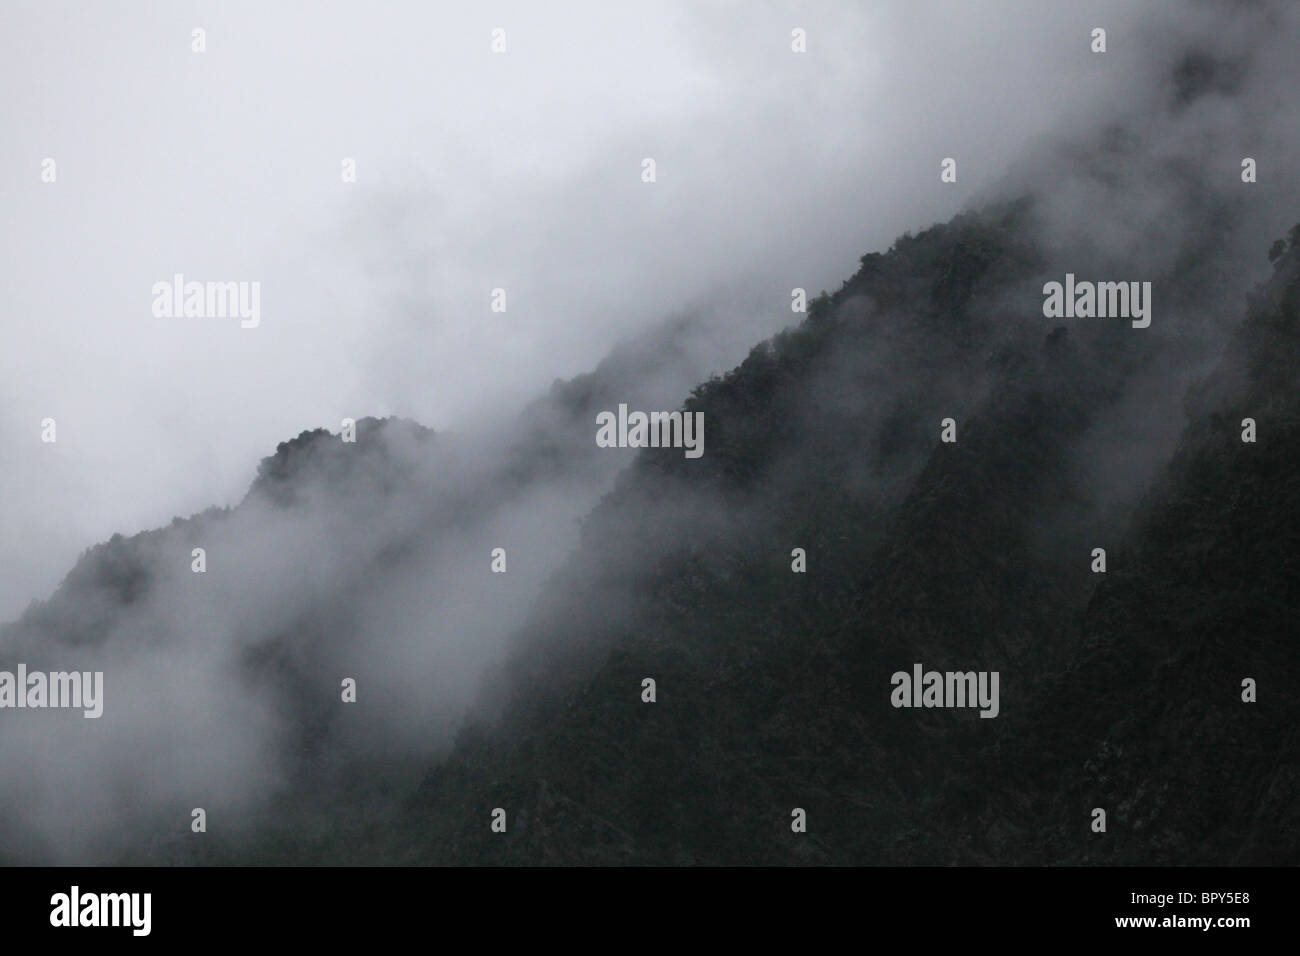 Steigender Nebel aus niedrigen Bäumen Gewitterwolke und Starkregen in der Nähe von Alins in Andorra Vall Ferrera Tal Grenze Pyrenäen Spanien Stockfoto